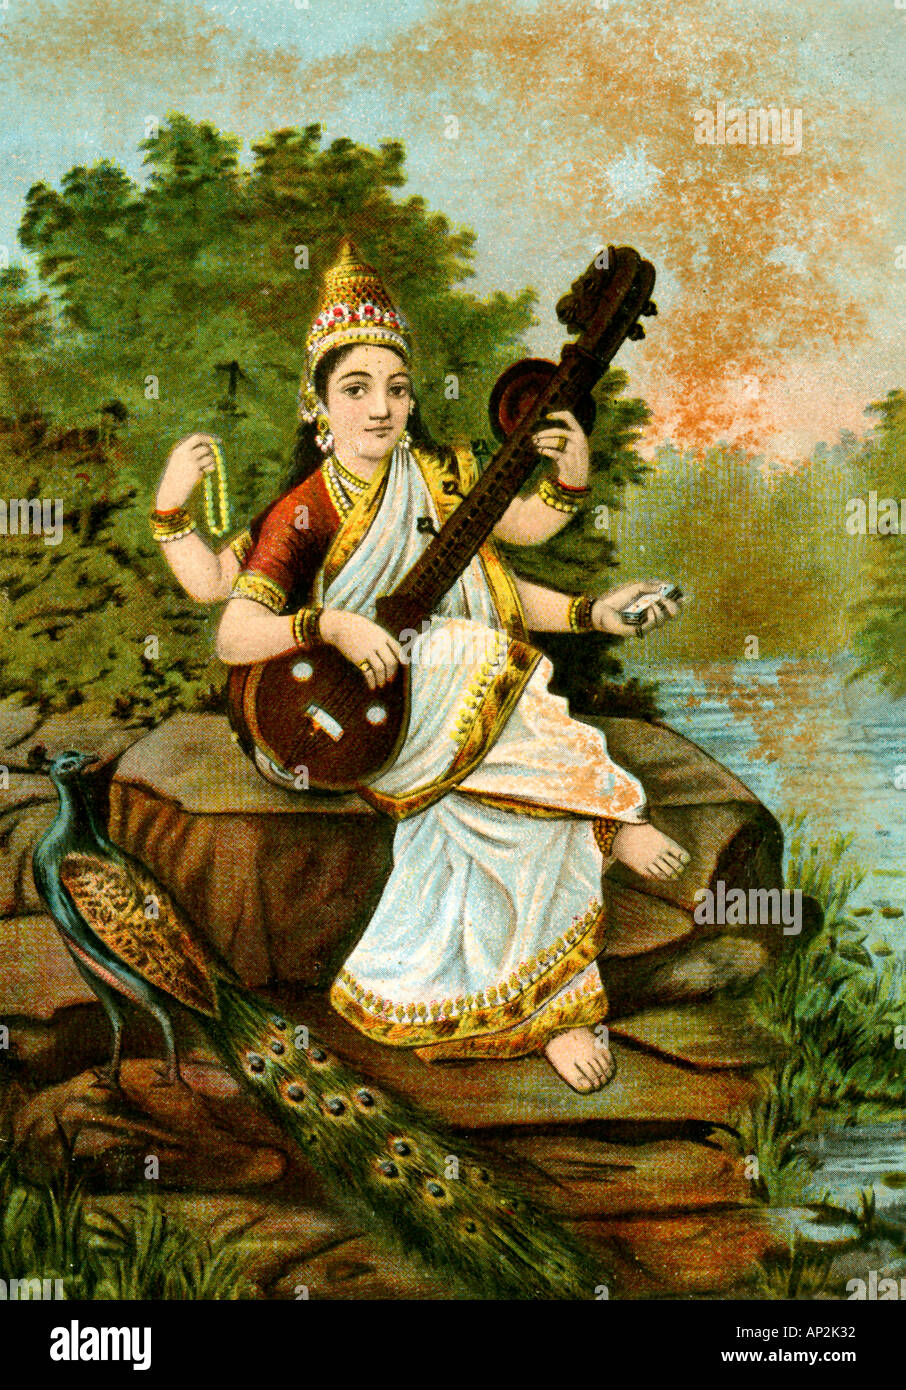 Kunst Mythologie Malerei der indischen Göttin Saraswati mit Musikinstrument Veena und Peacock Gefährtin von Lord Brahma Indien Asien Stockfoto